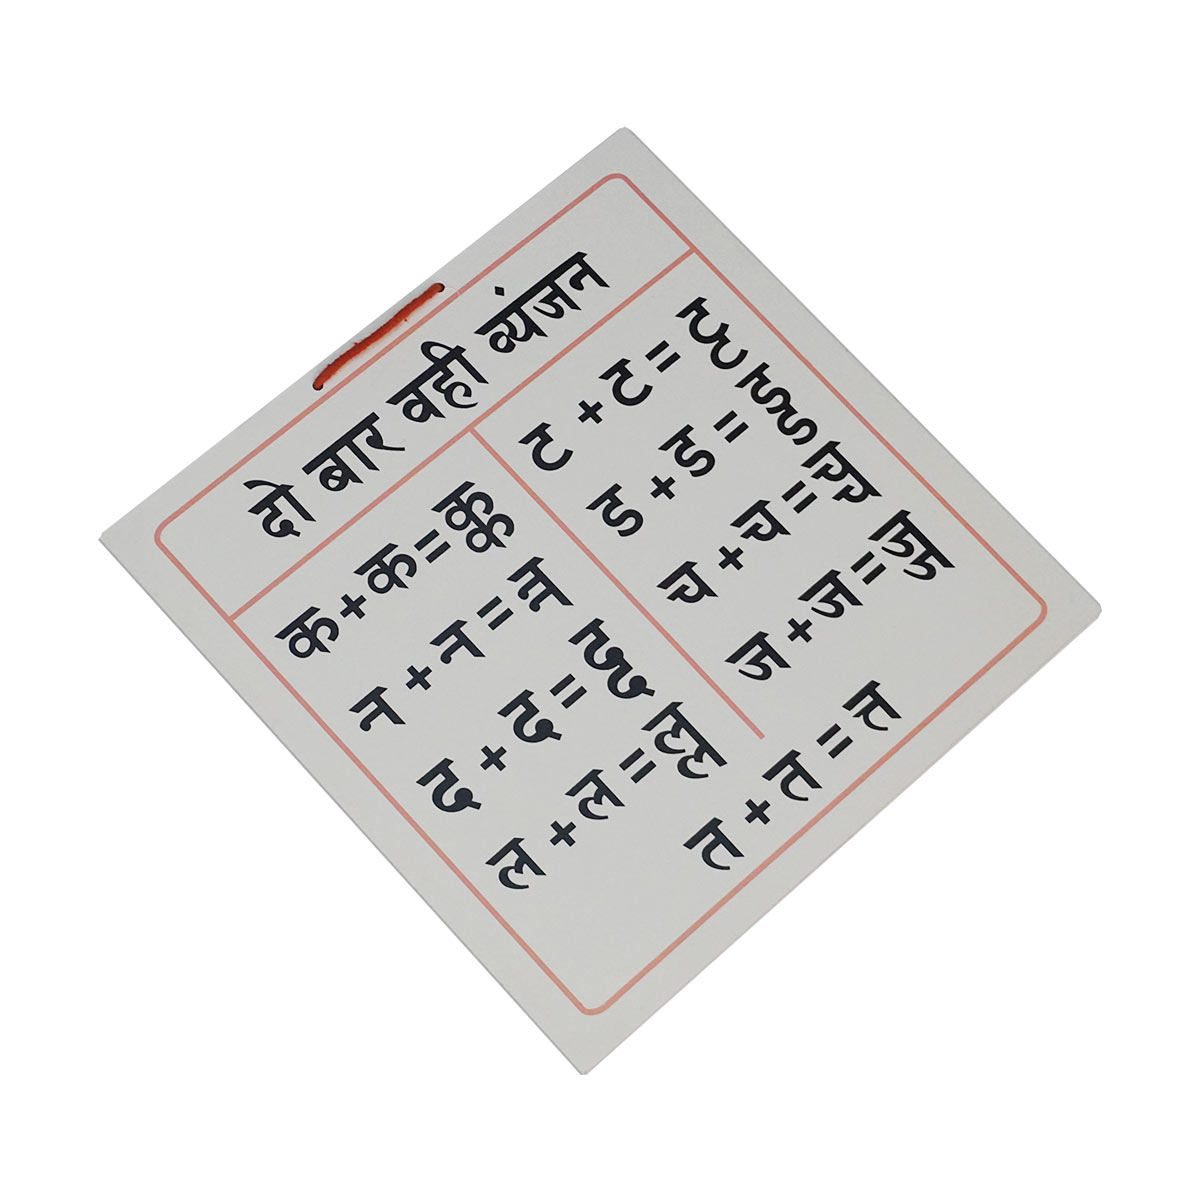 Hindi Matra Chart – Montessori Materials, Learning Toys and ...